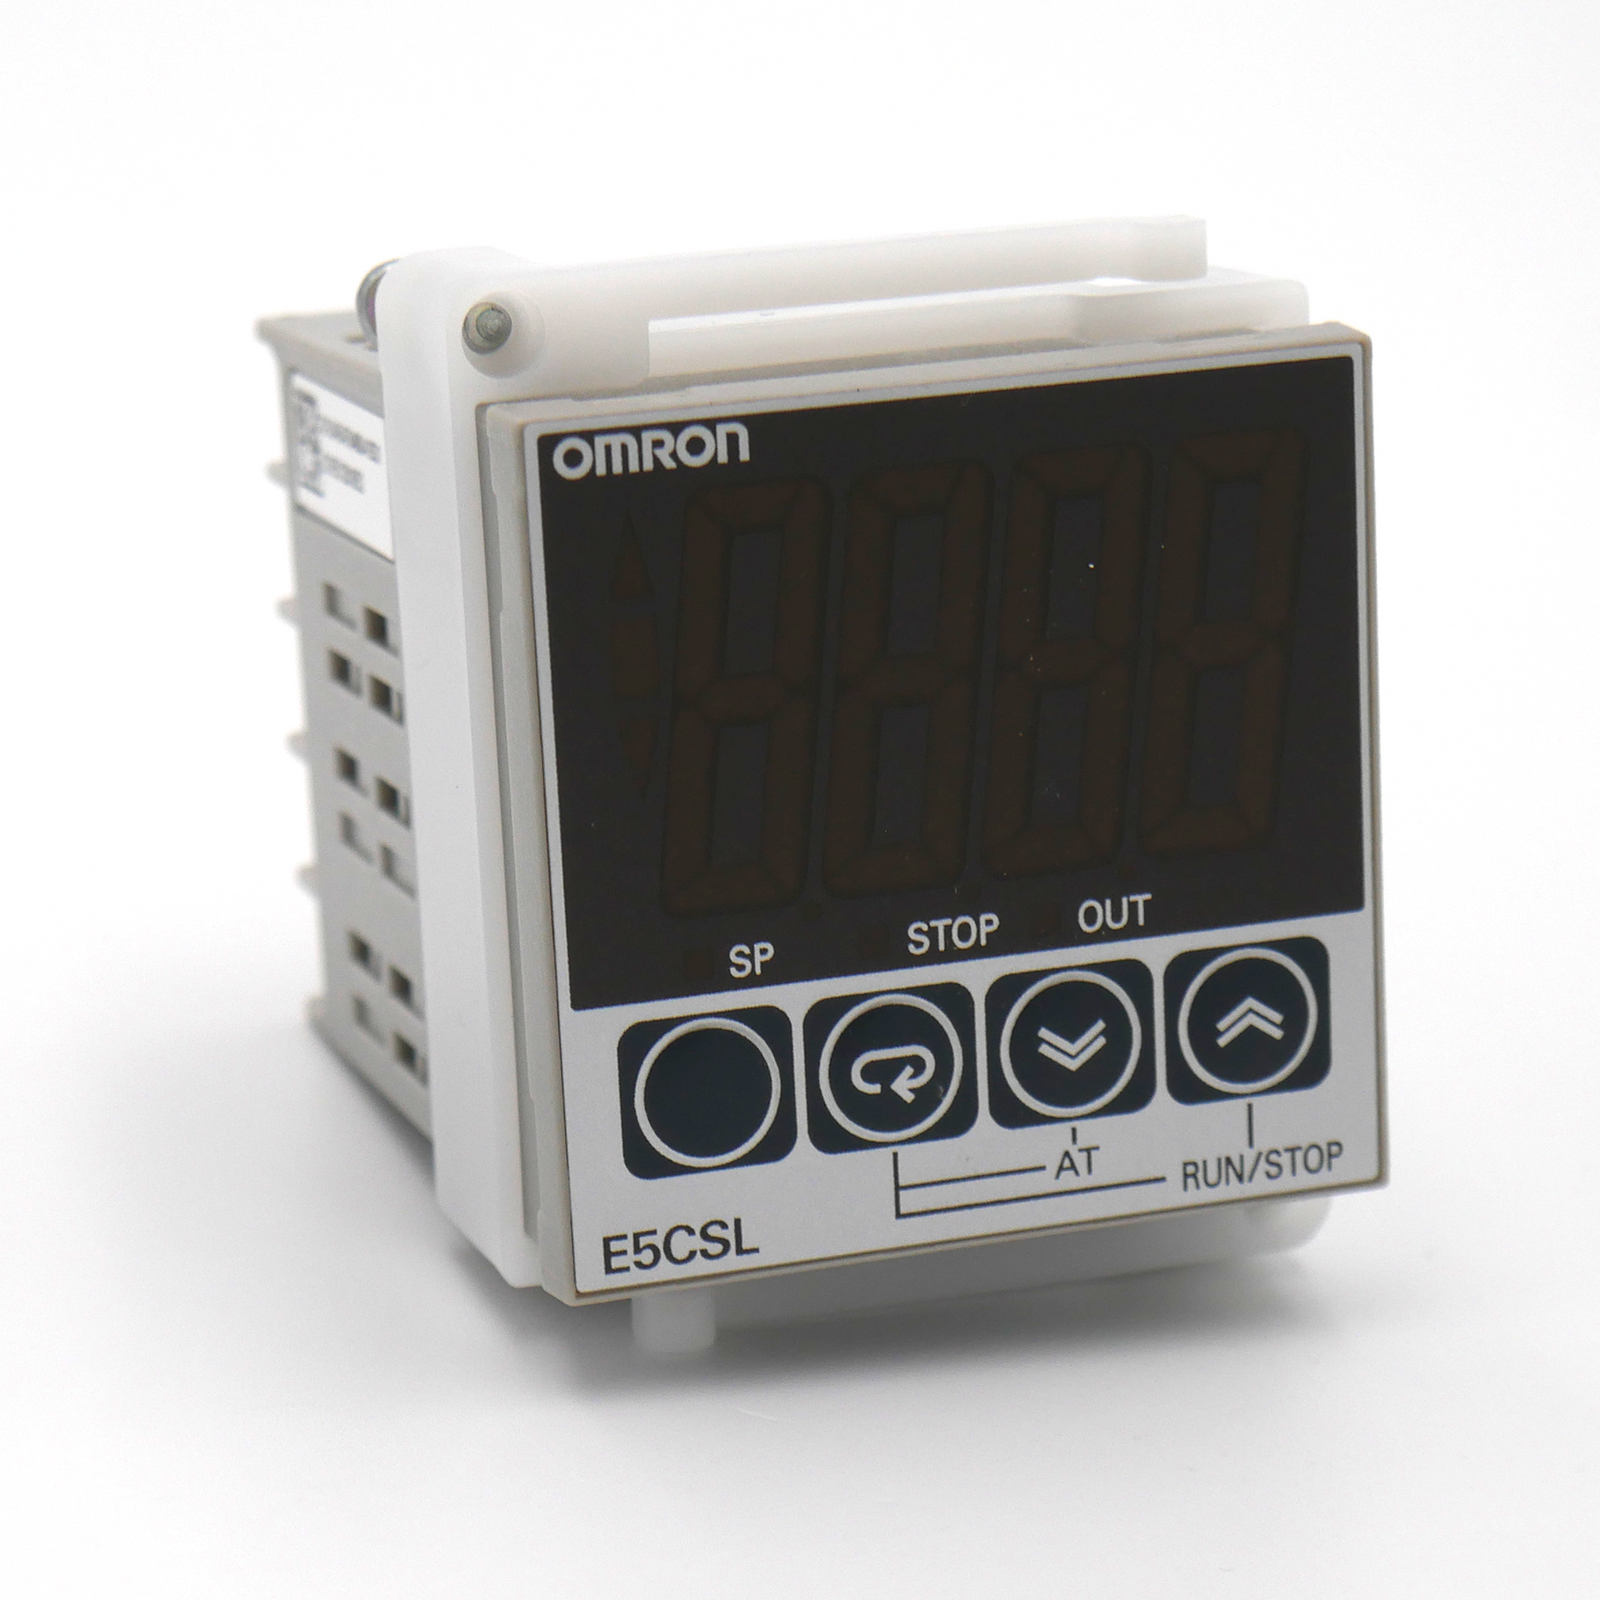 Digital Temperature controller OMRON ESCSL QTC